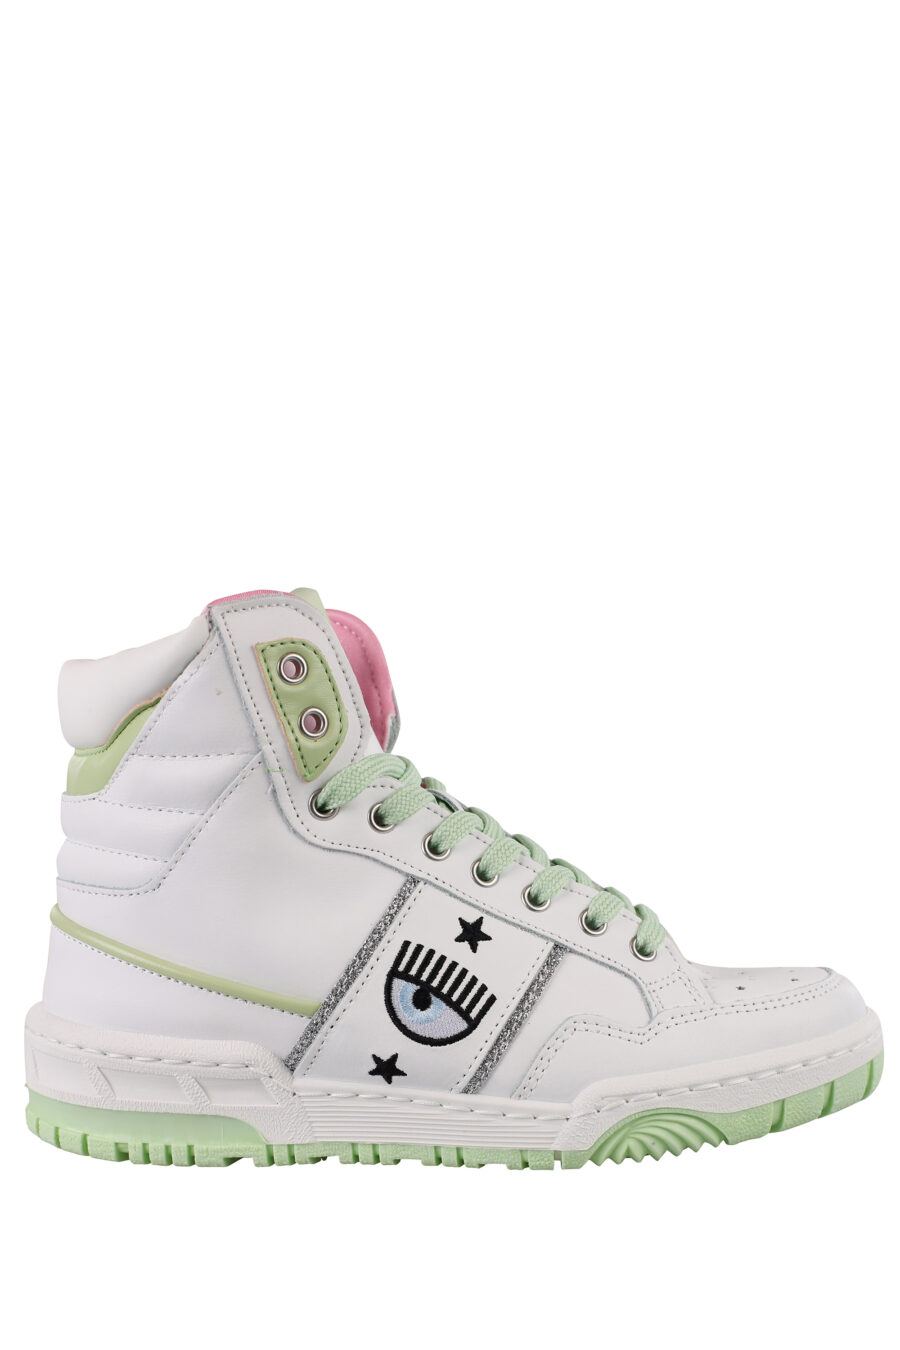 Zapatillas blancas y verde con logo ojo y detalles rosas - IMG 1168